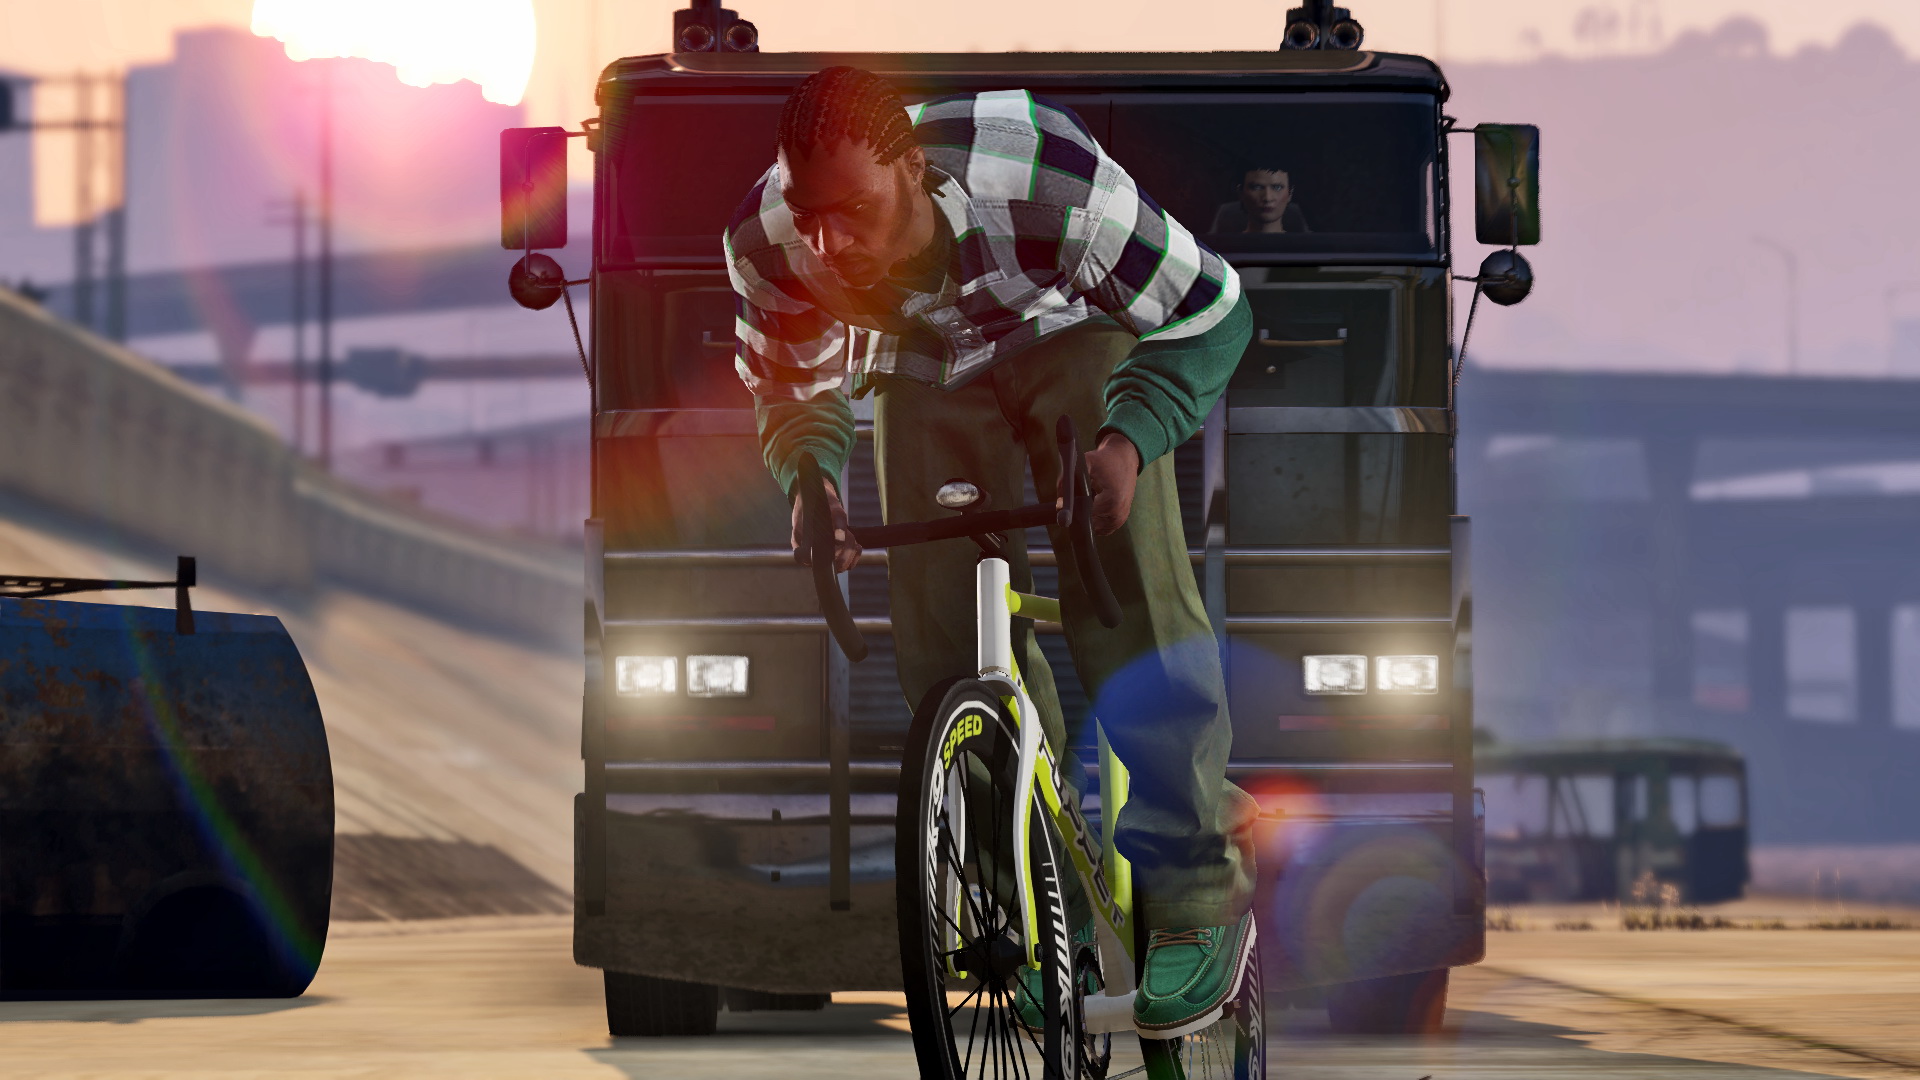 Player riding a bike